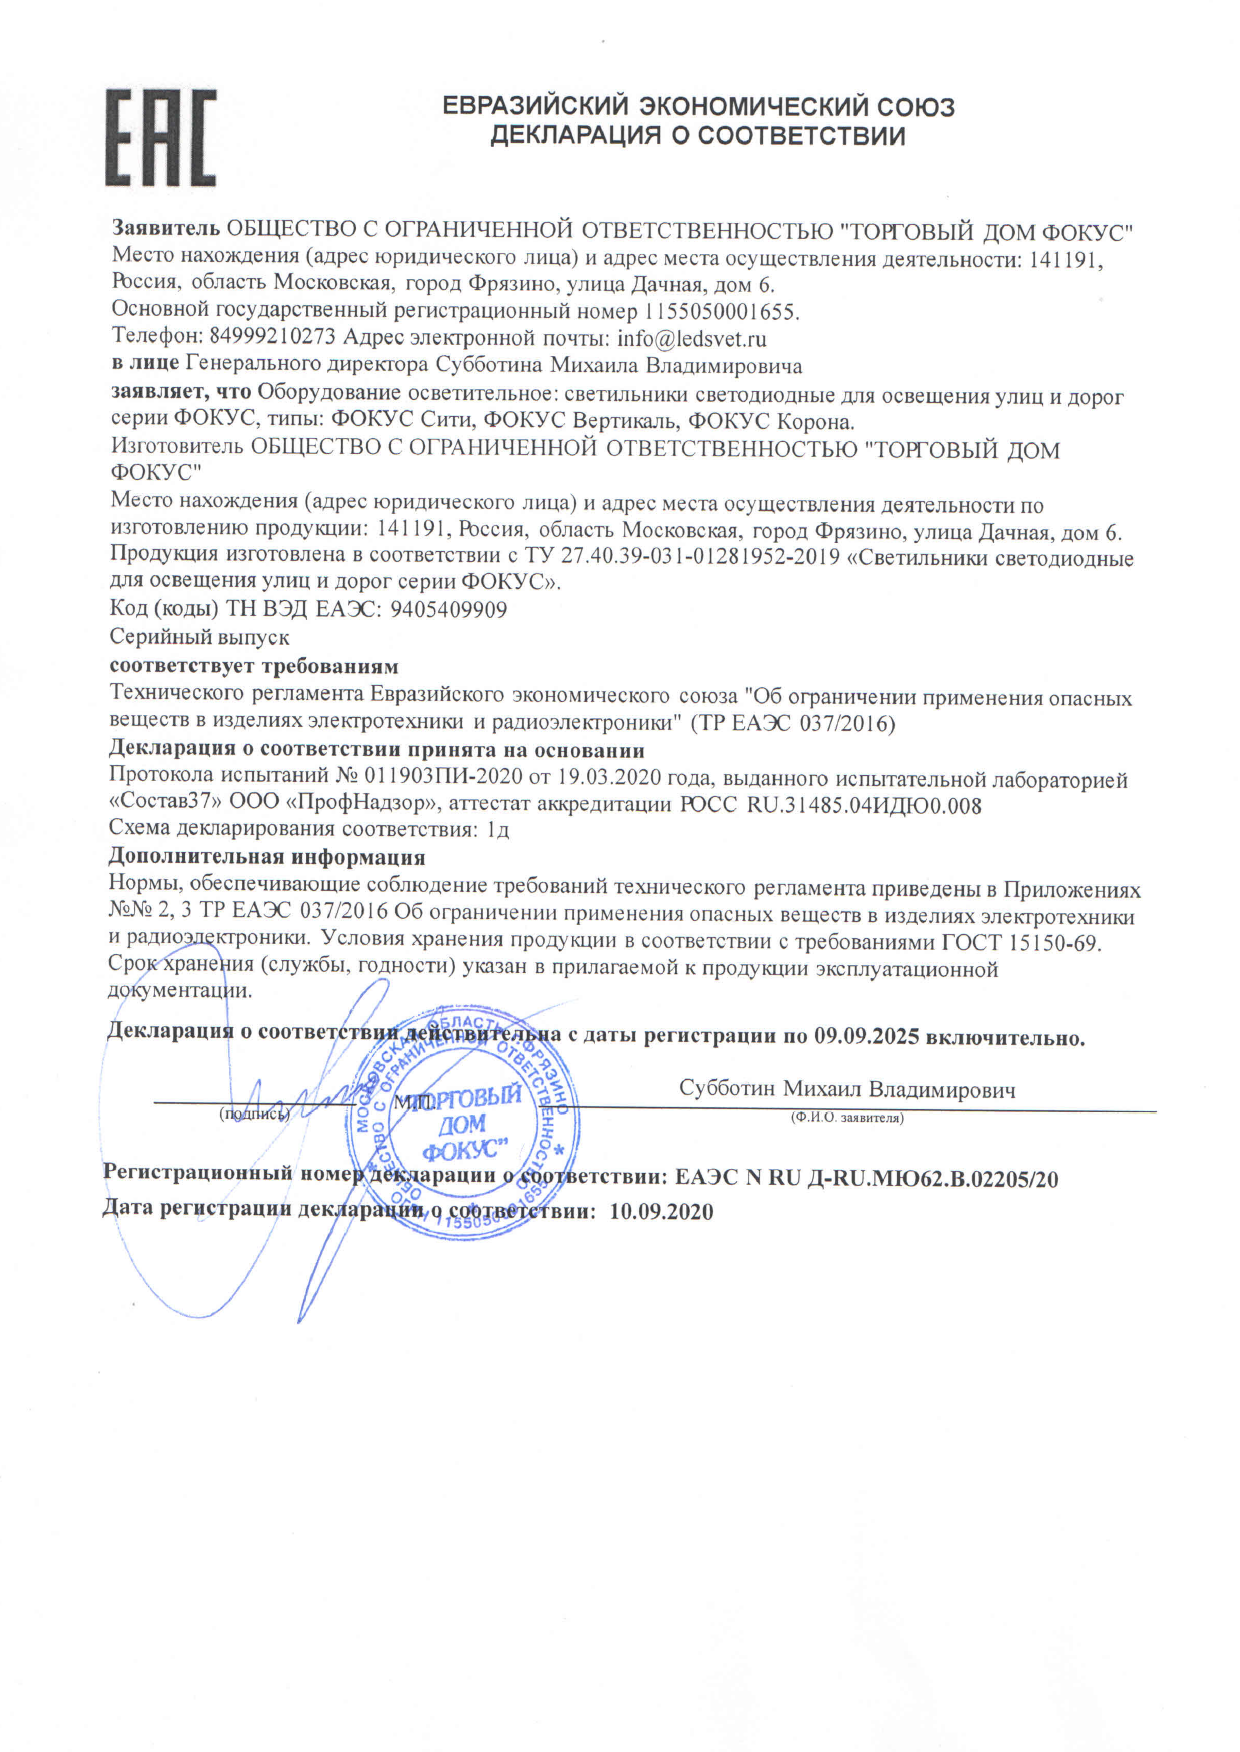 declaratsiya-sootvetstvia-fokus-korona.pdf